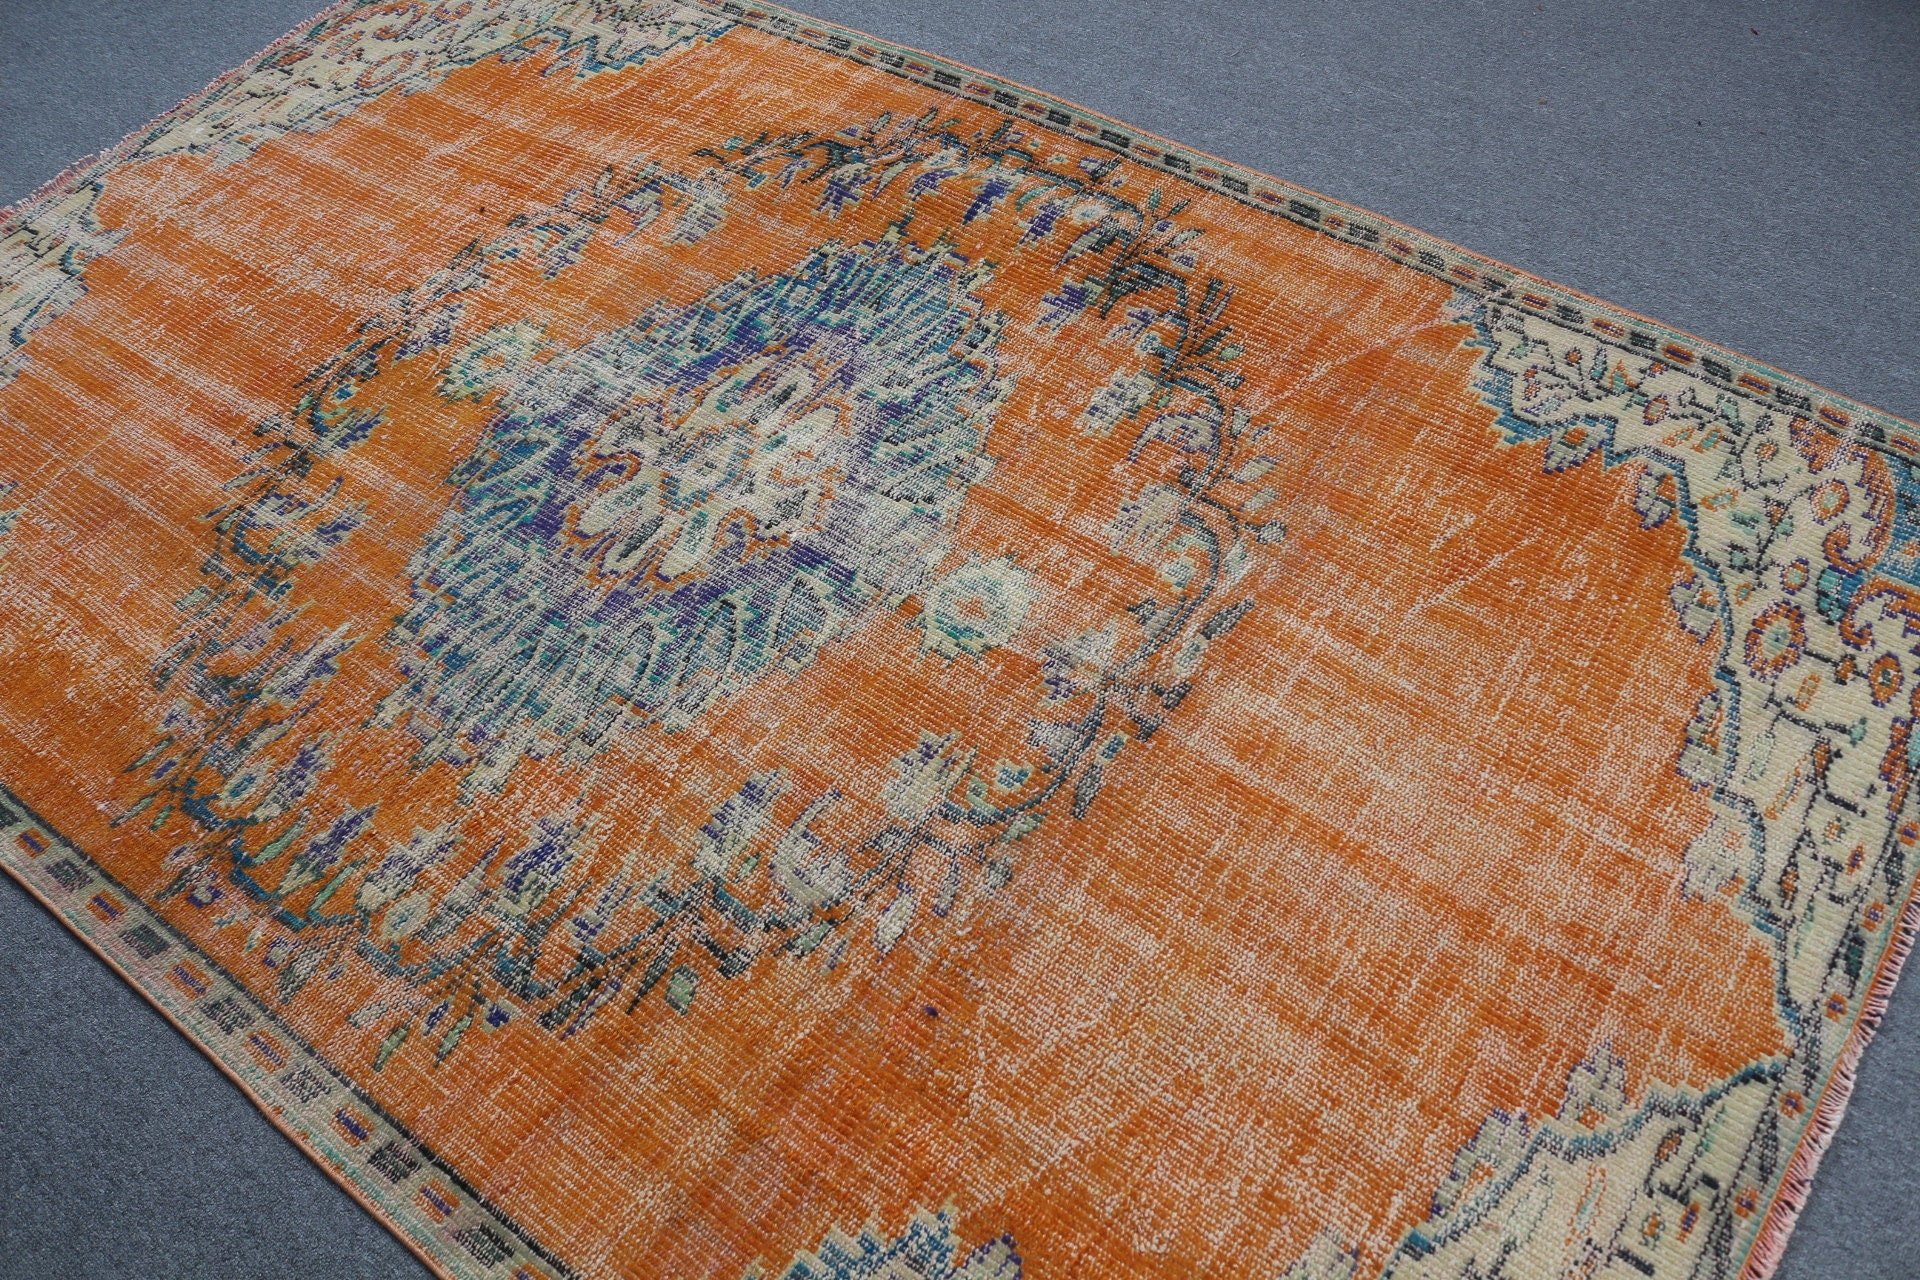 Floor Rugs, Moroccan Rugs, Bedroom Rug, Living Room Rug, Natural Rugs, Orange Oriental Rug, Turkish Rug, Vintage Rug, 5.2x8 ft Large Rugs